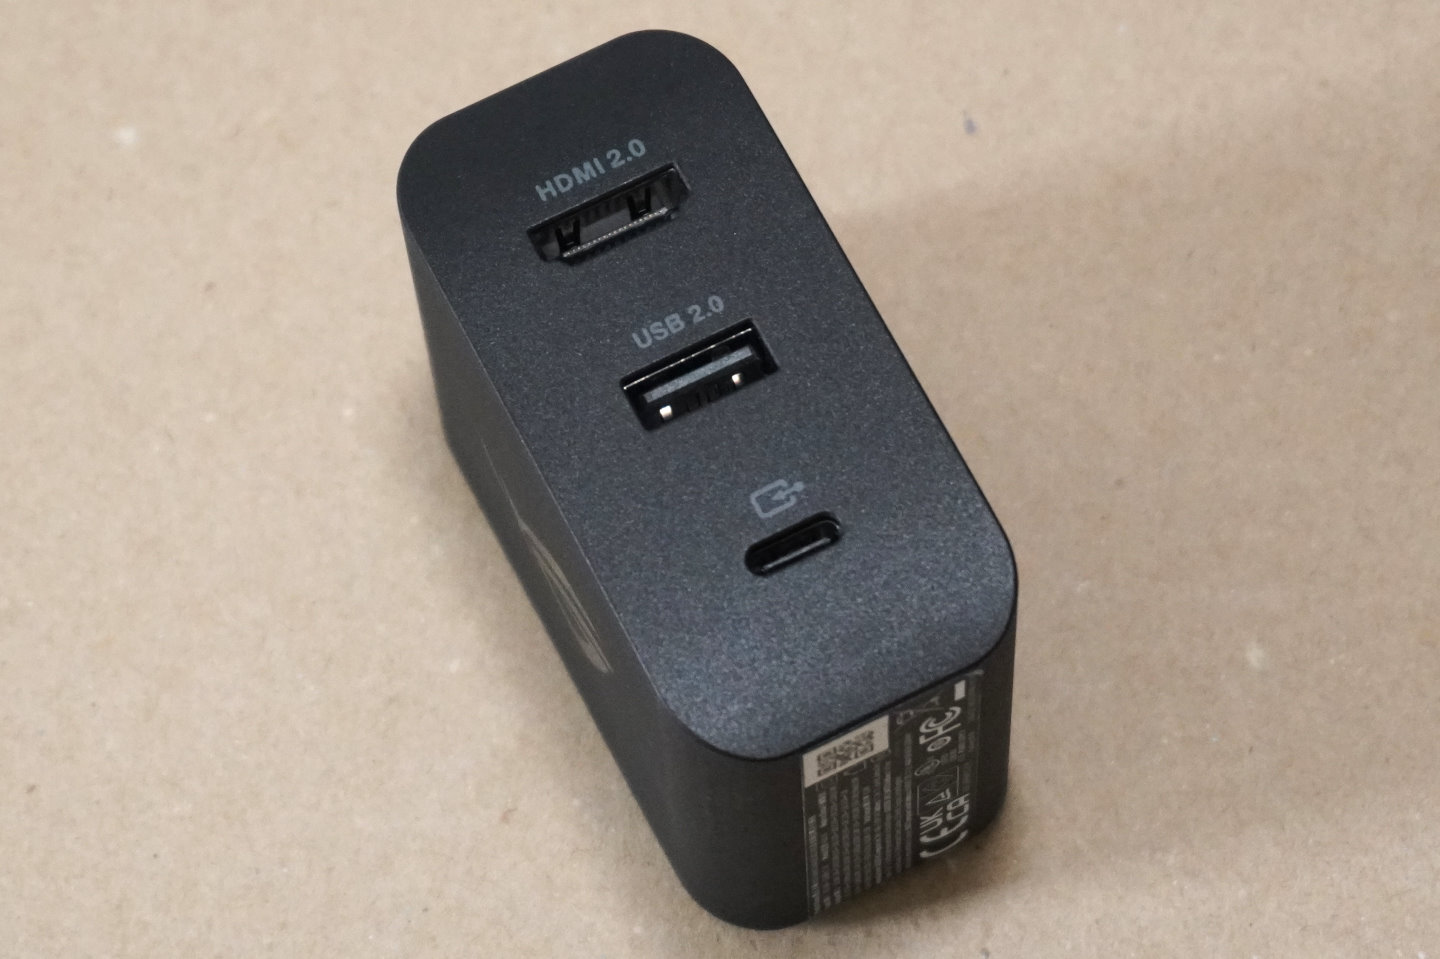 上方的「豆腐」則可透過USB Type-C纜線連接到主機，在充電同時進行影音輸出與資料傳輸。但它僅提供1組USB 2.0端，實用性遠低於一般USB Type-C擴充底座。